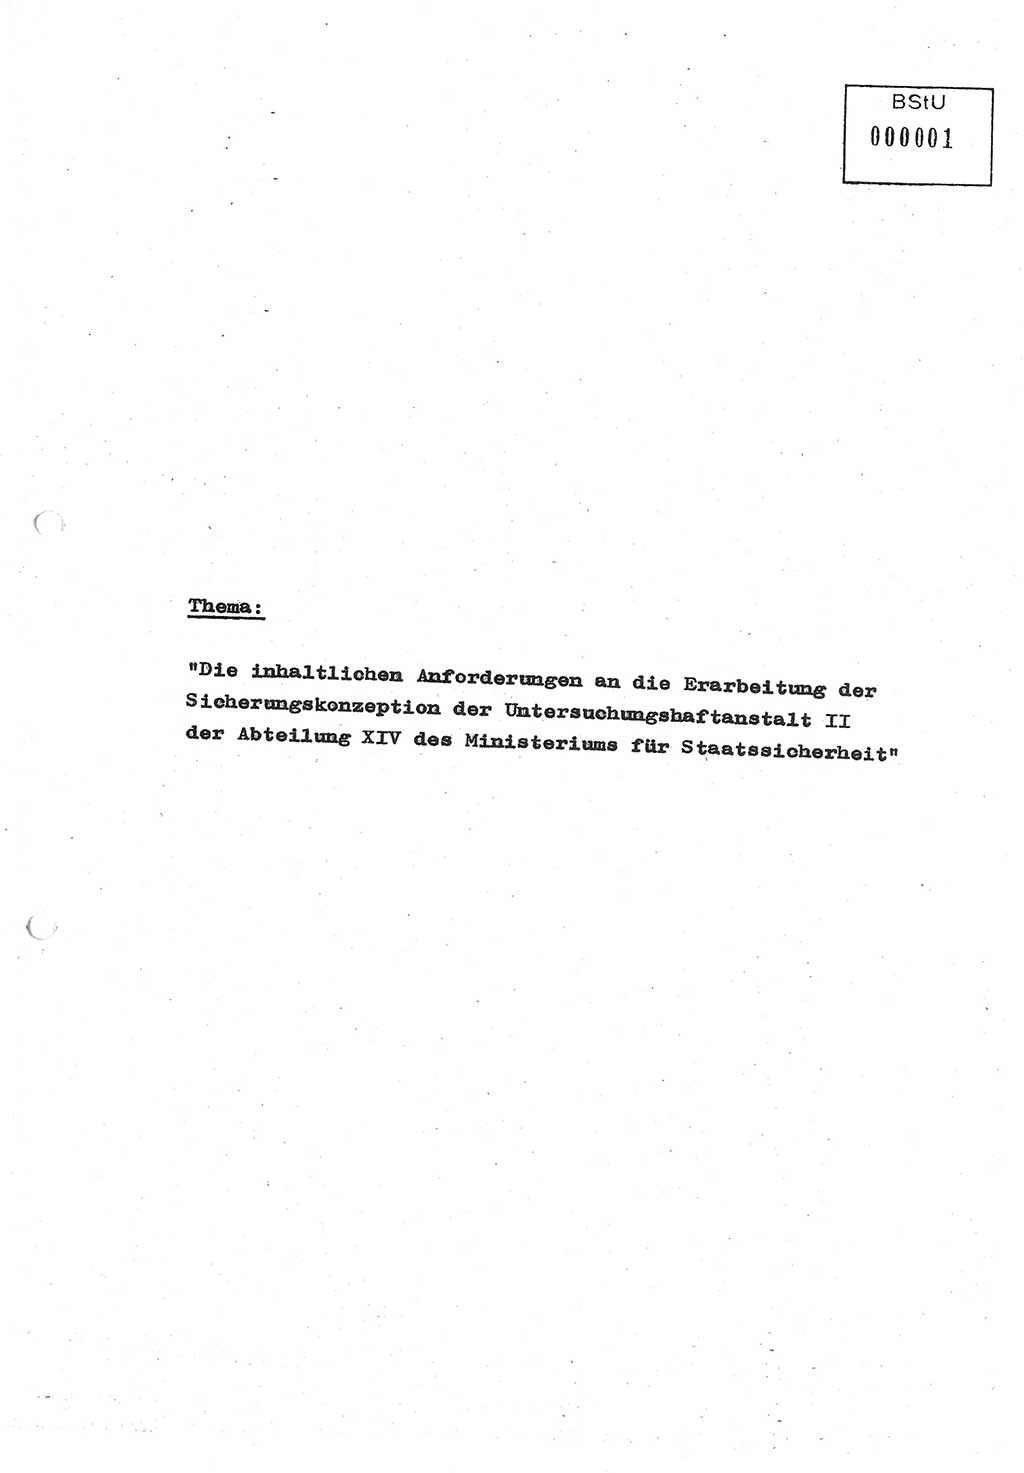 Diplomarbeit (Entwurf) Oberleutnant Peter Parke (Abt. ⅩⅣ), Ministerium für Staatssicherheit (MfS) [Deutsche Demokratische Republik (DDR)], Juristische Hochschule (JHS), Geheime Verschlußsache (GVS) o001-98/86, Potsdam 1986, Seite 1 (Dipl.-Arb. MfS DDR JHS GVS o001-98/86 1986, S. 1)